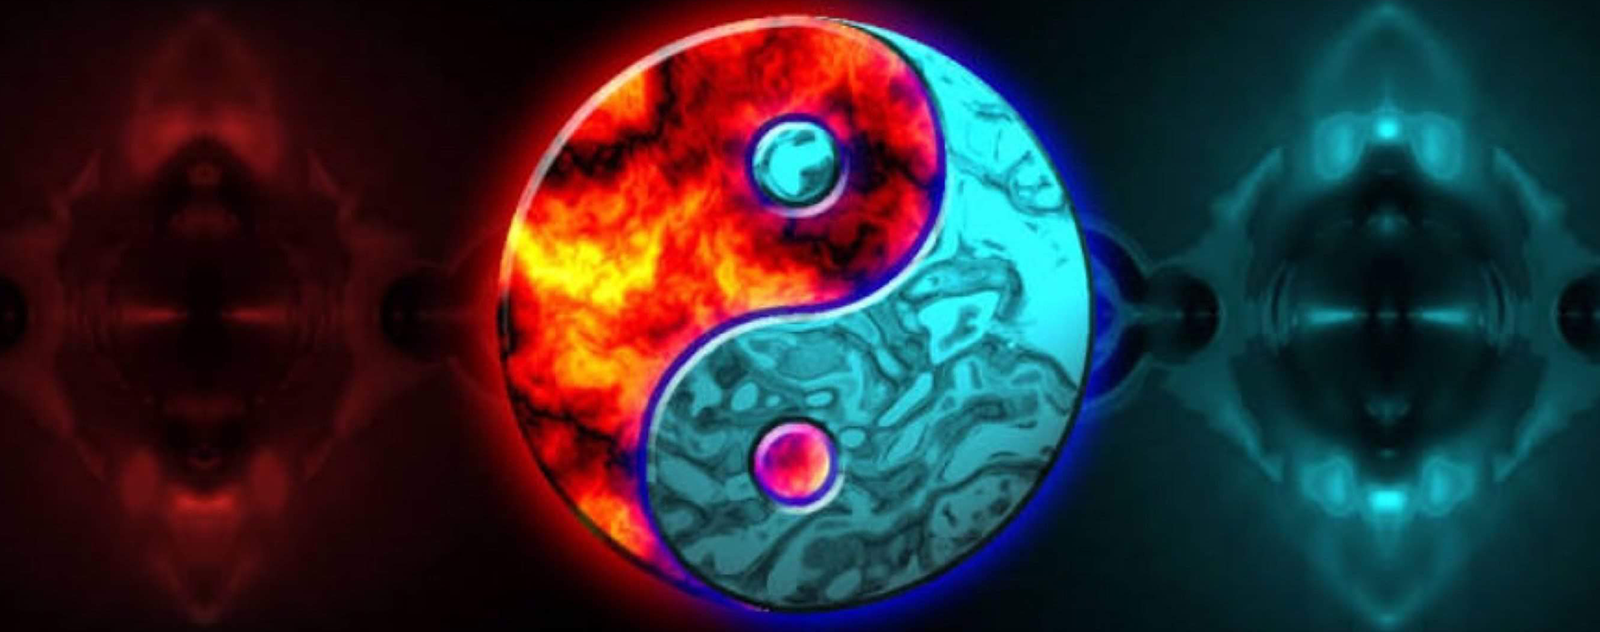 yin yang logo